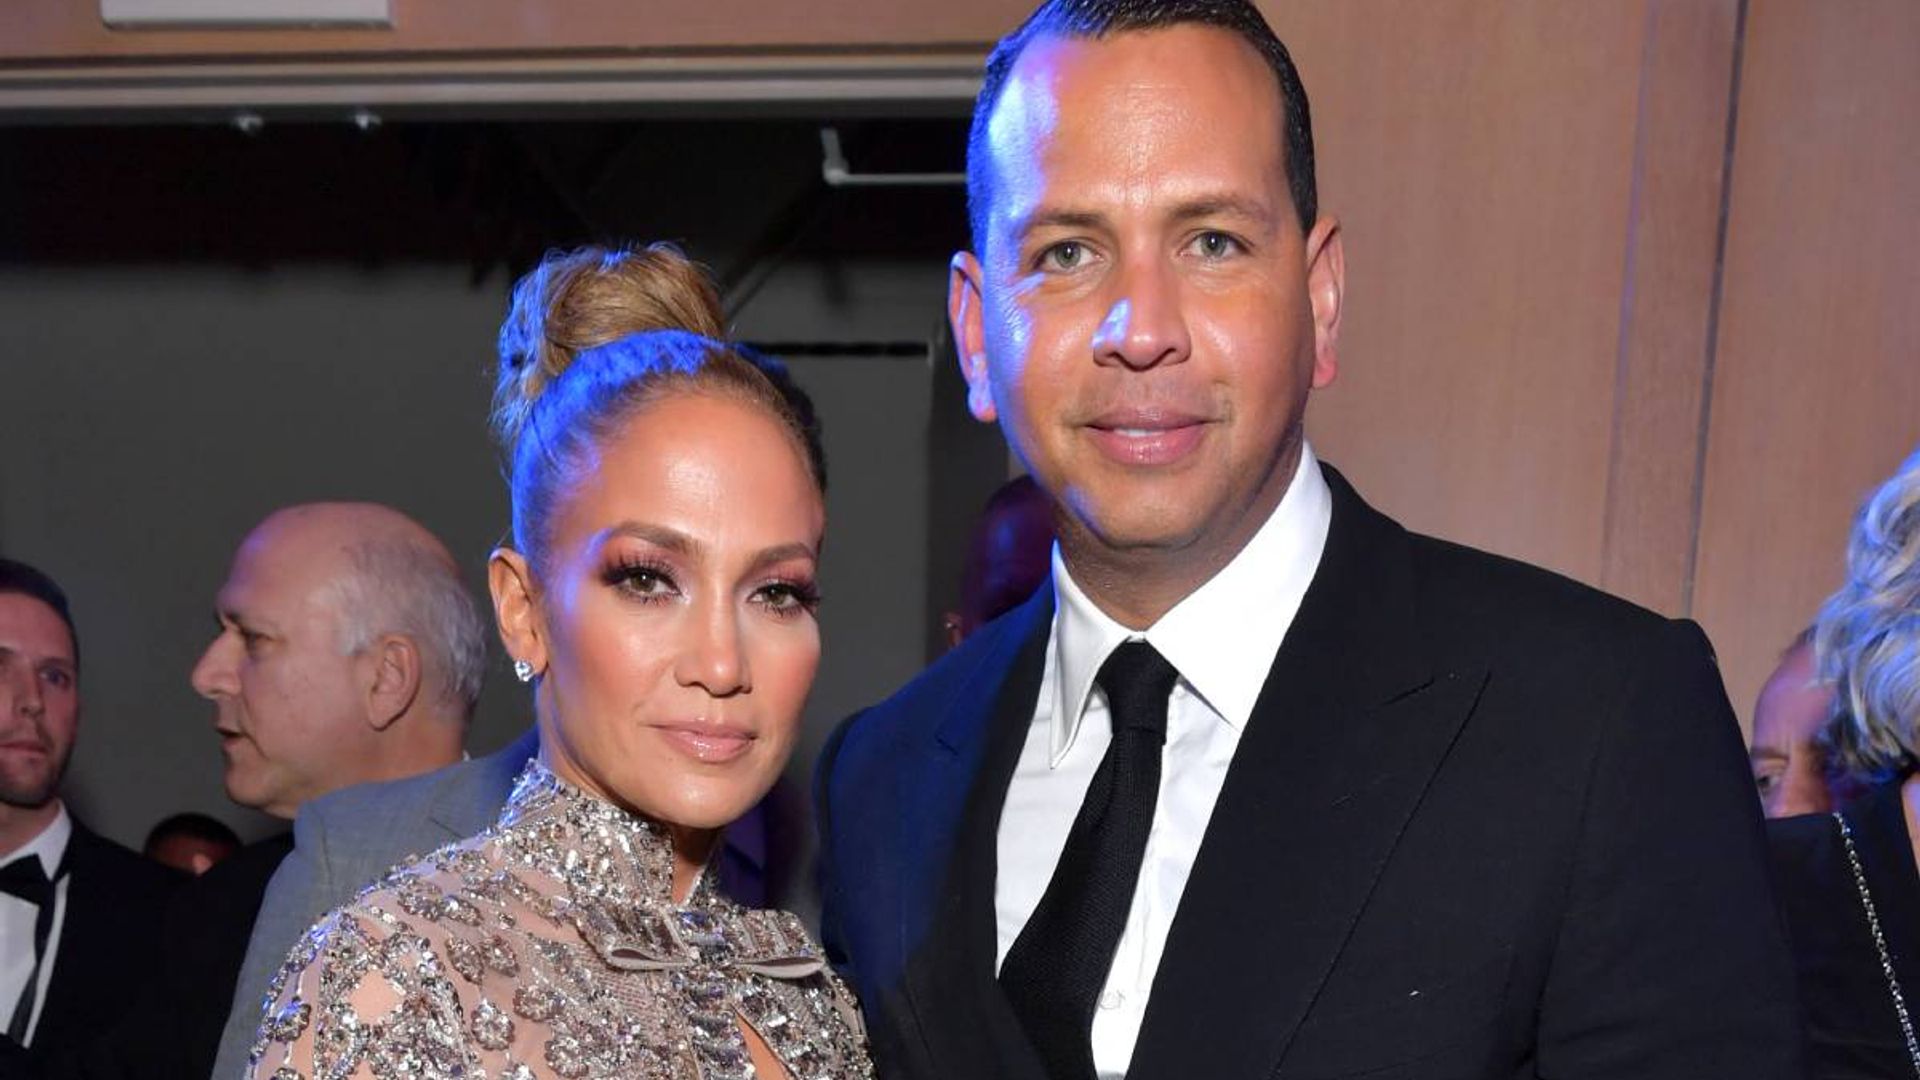 Alex Rodriguez's sweet bond with Jennifer Lopez's ex-husband revealed